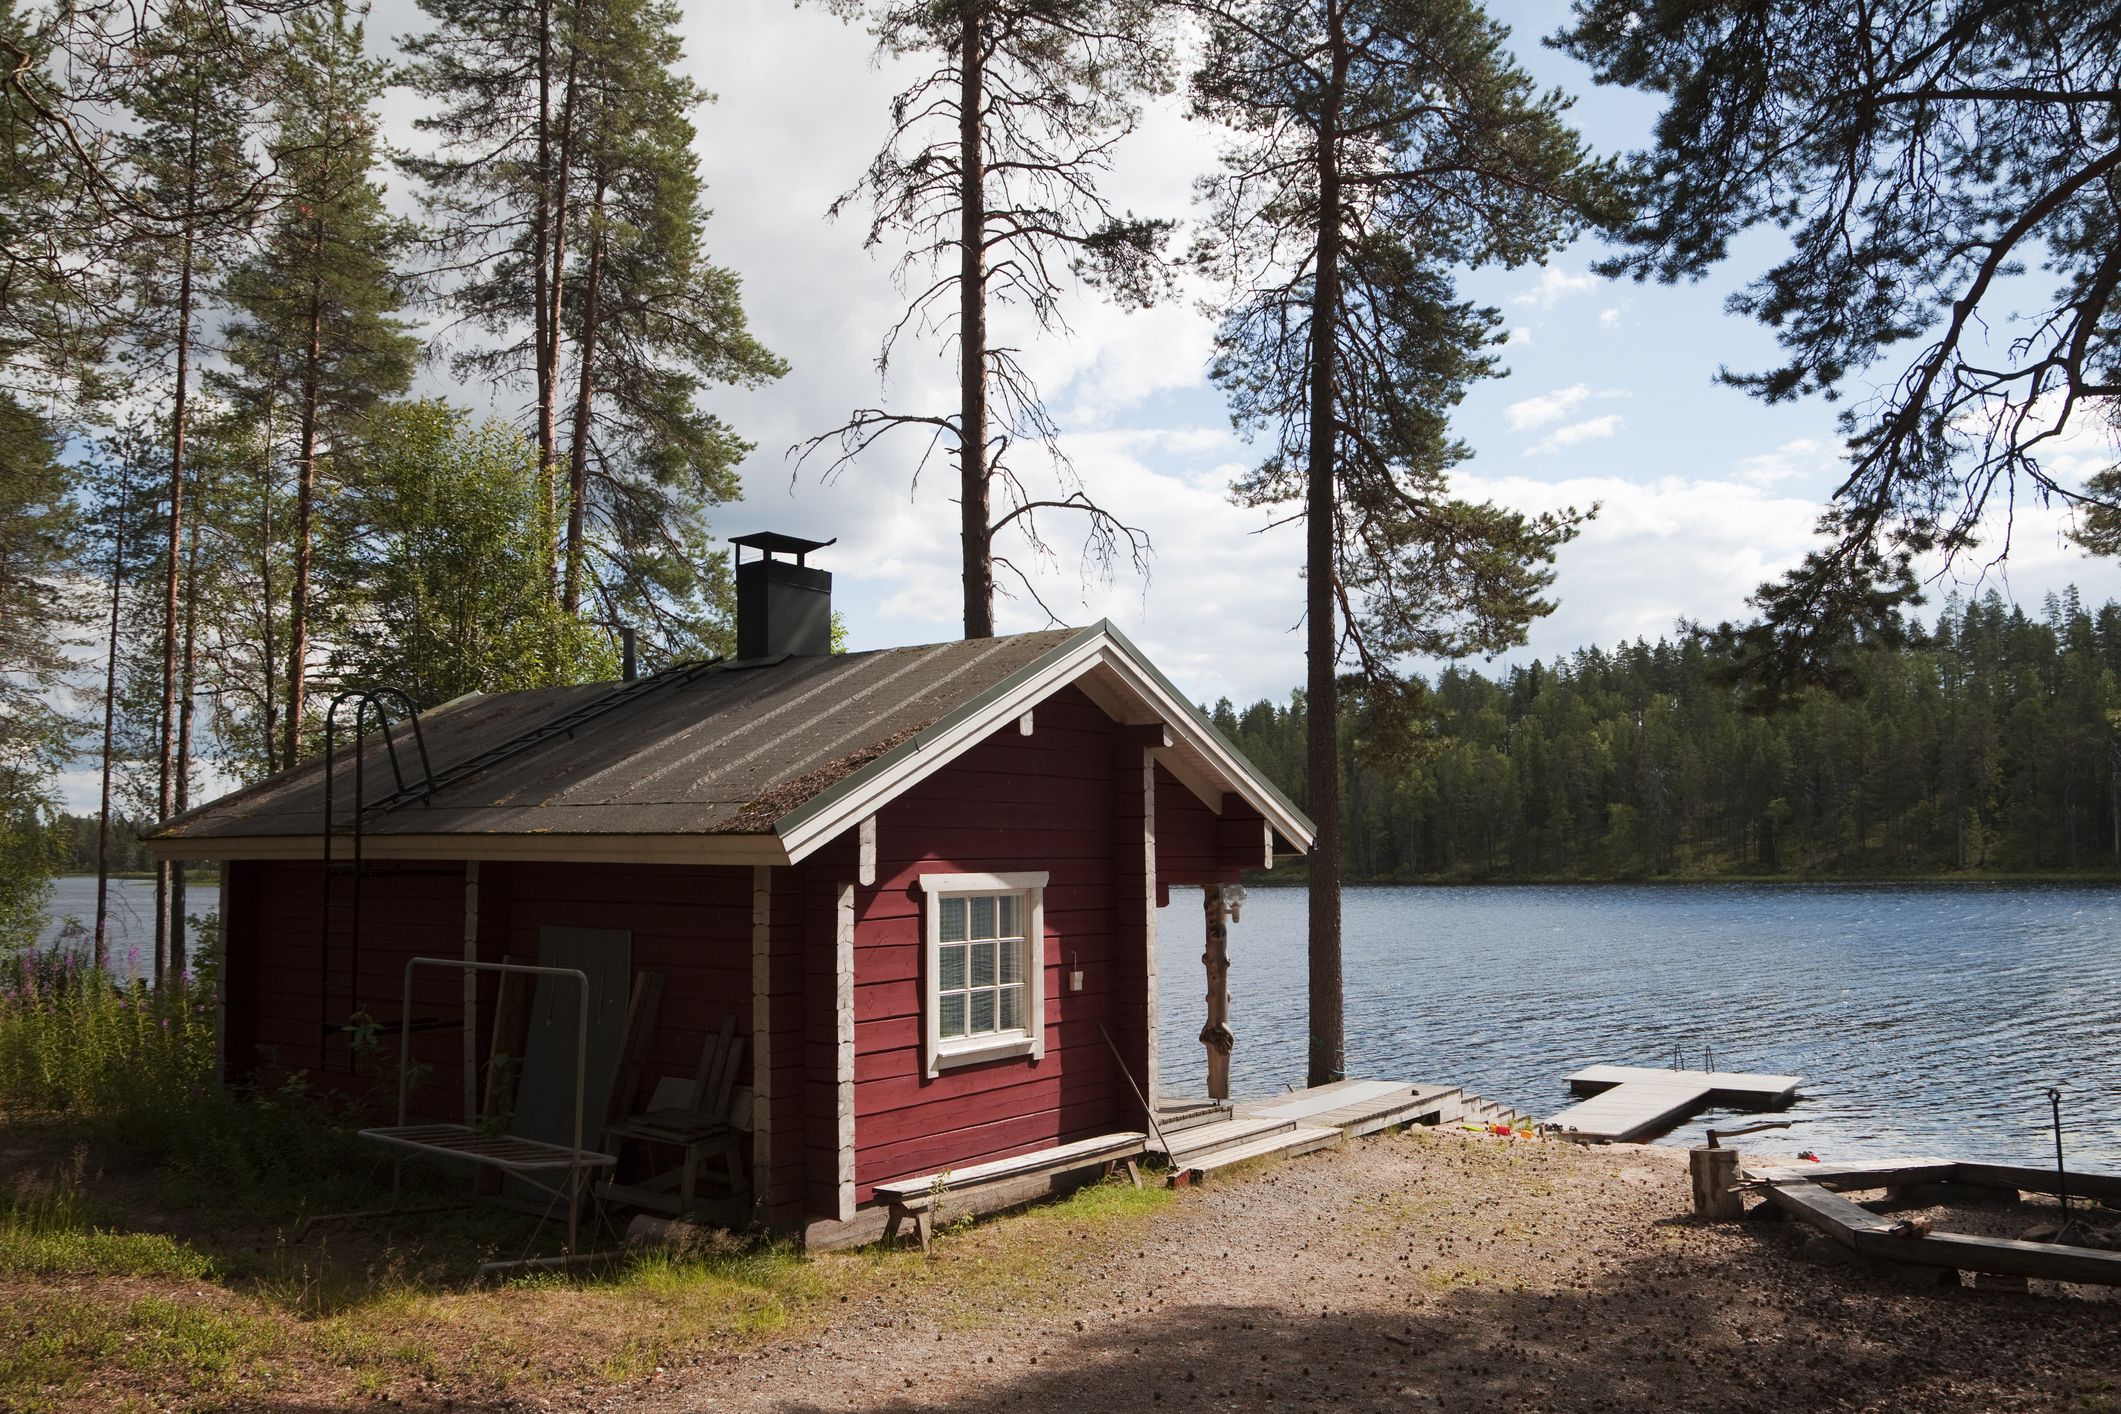 Cómo se construye una sauna finlandesa. – TVVI